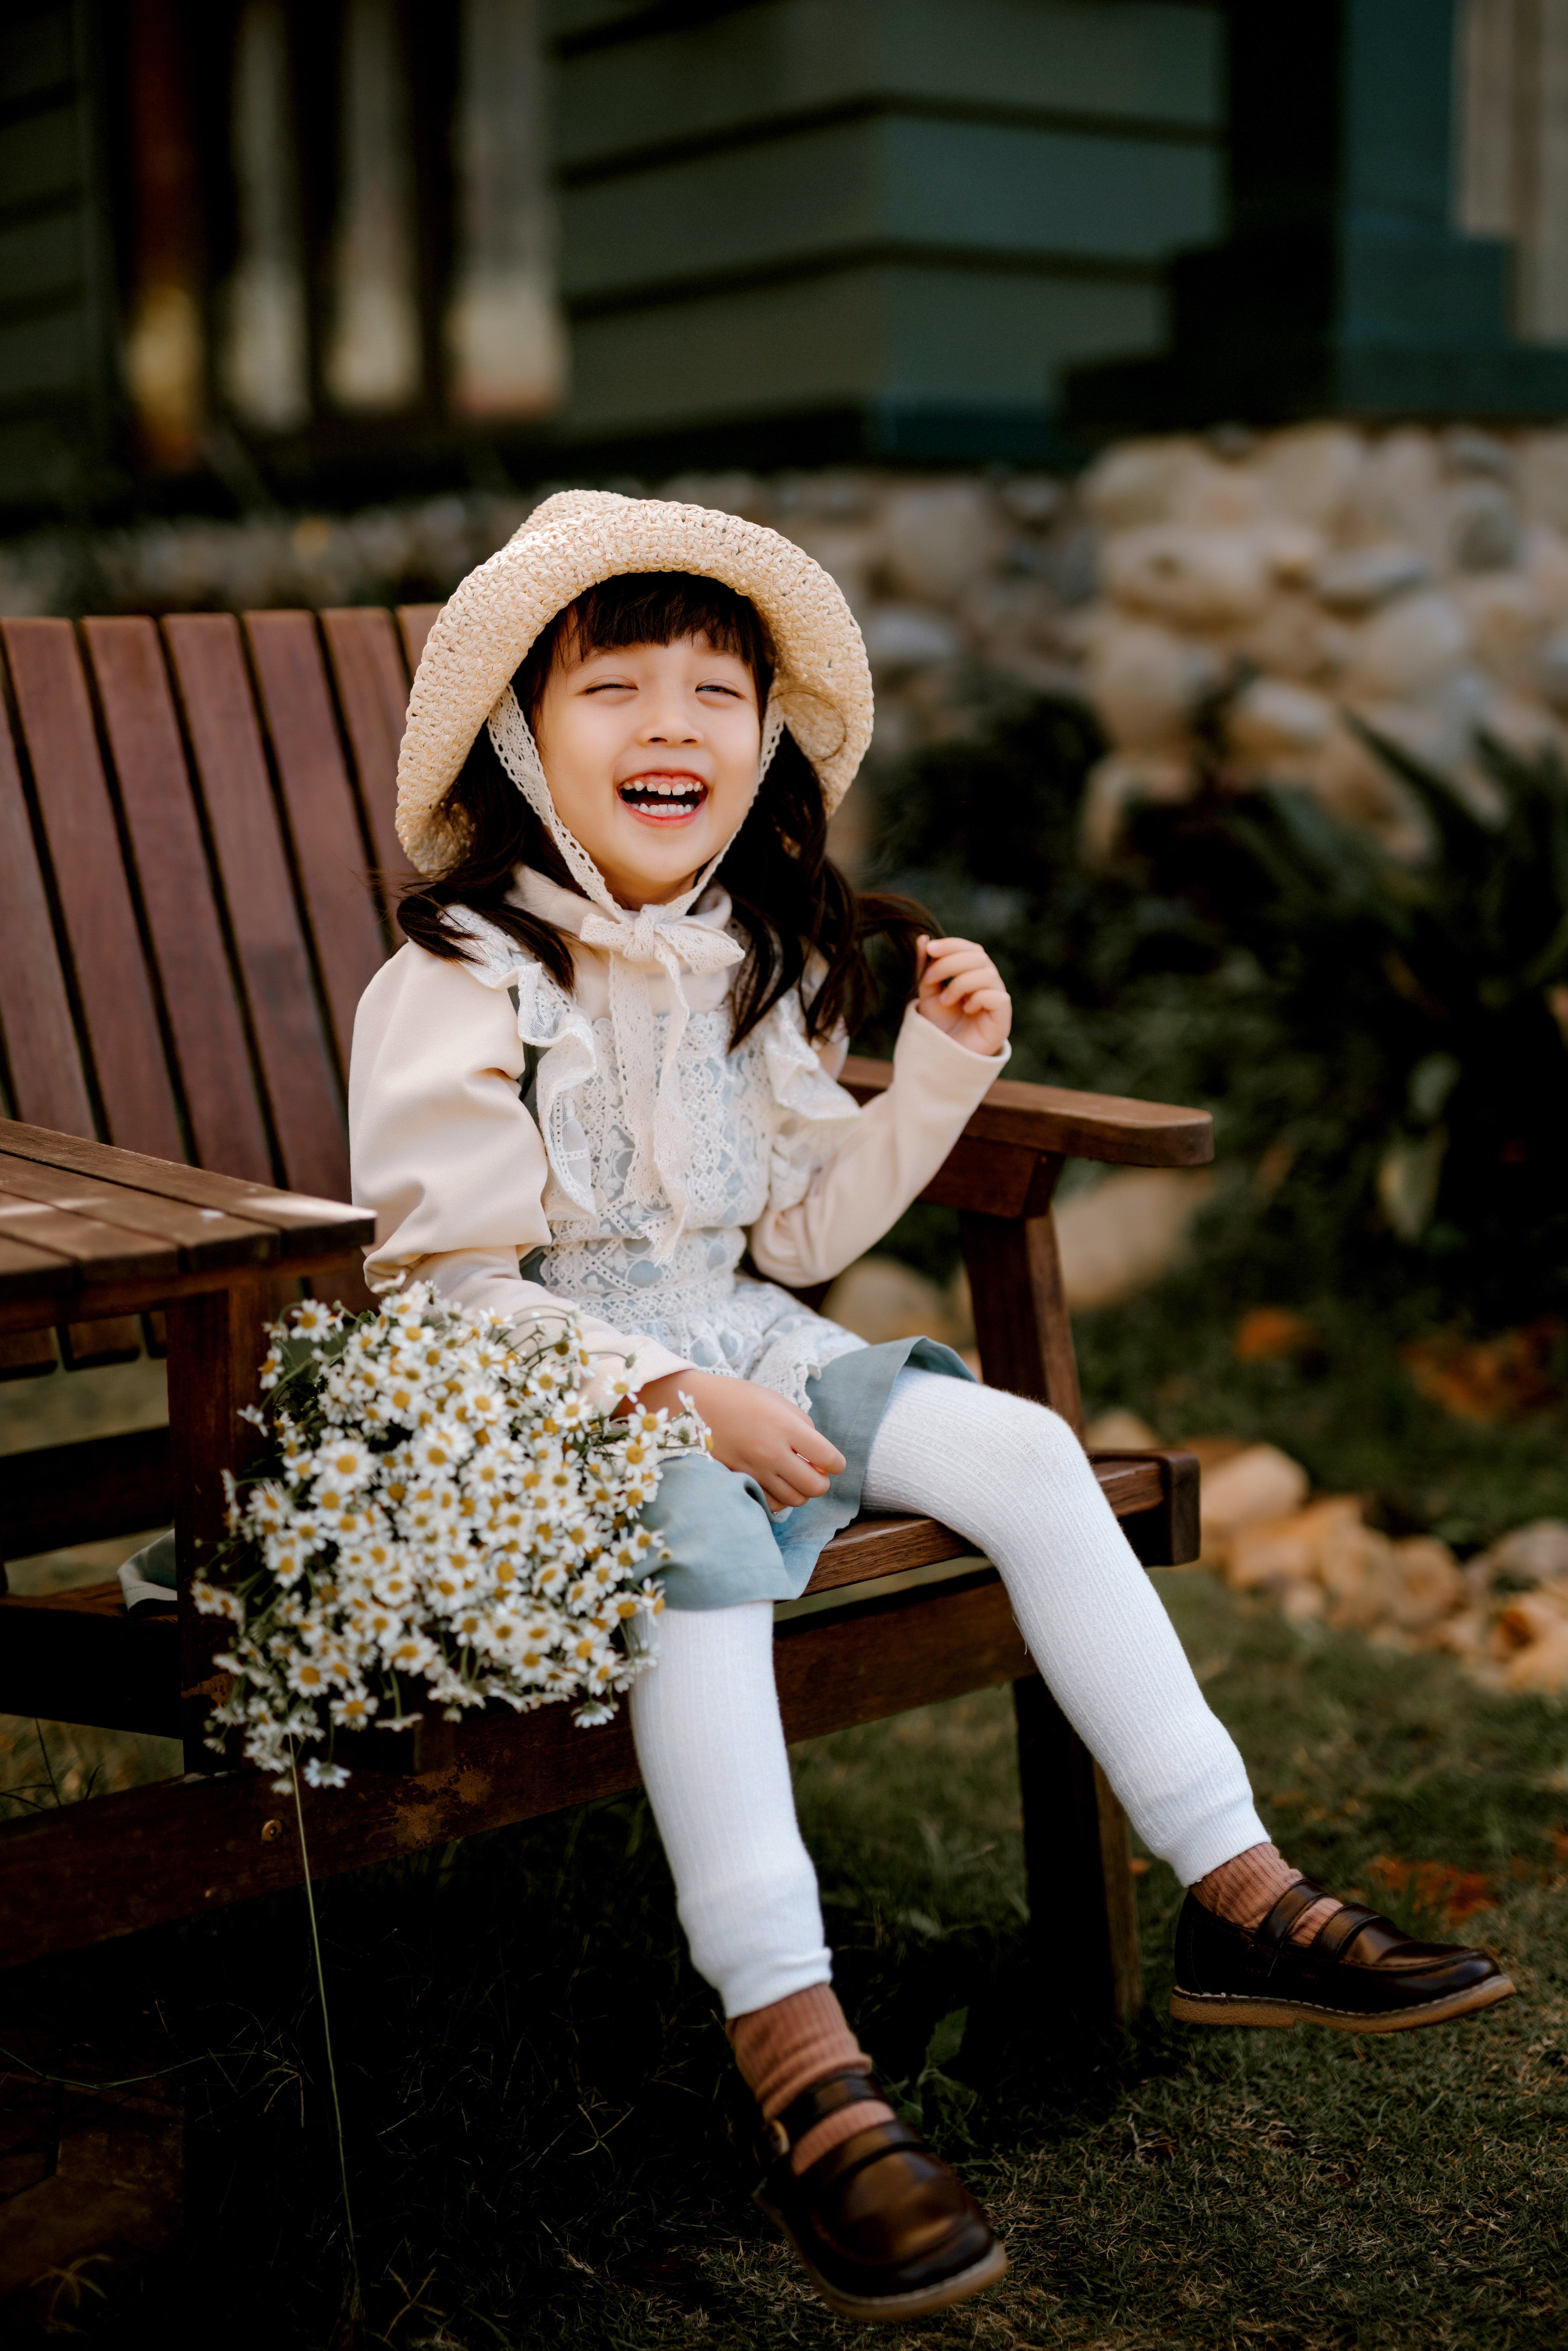 Das kleine Mädchen saß immer an der gleichen Stelle und verkaufte Blumen. | Quelle: Pexels